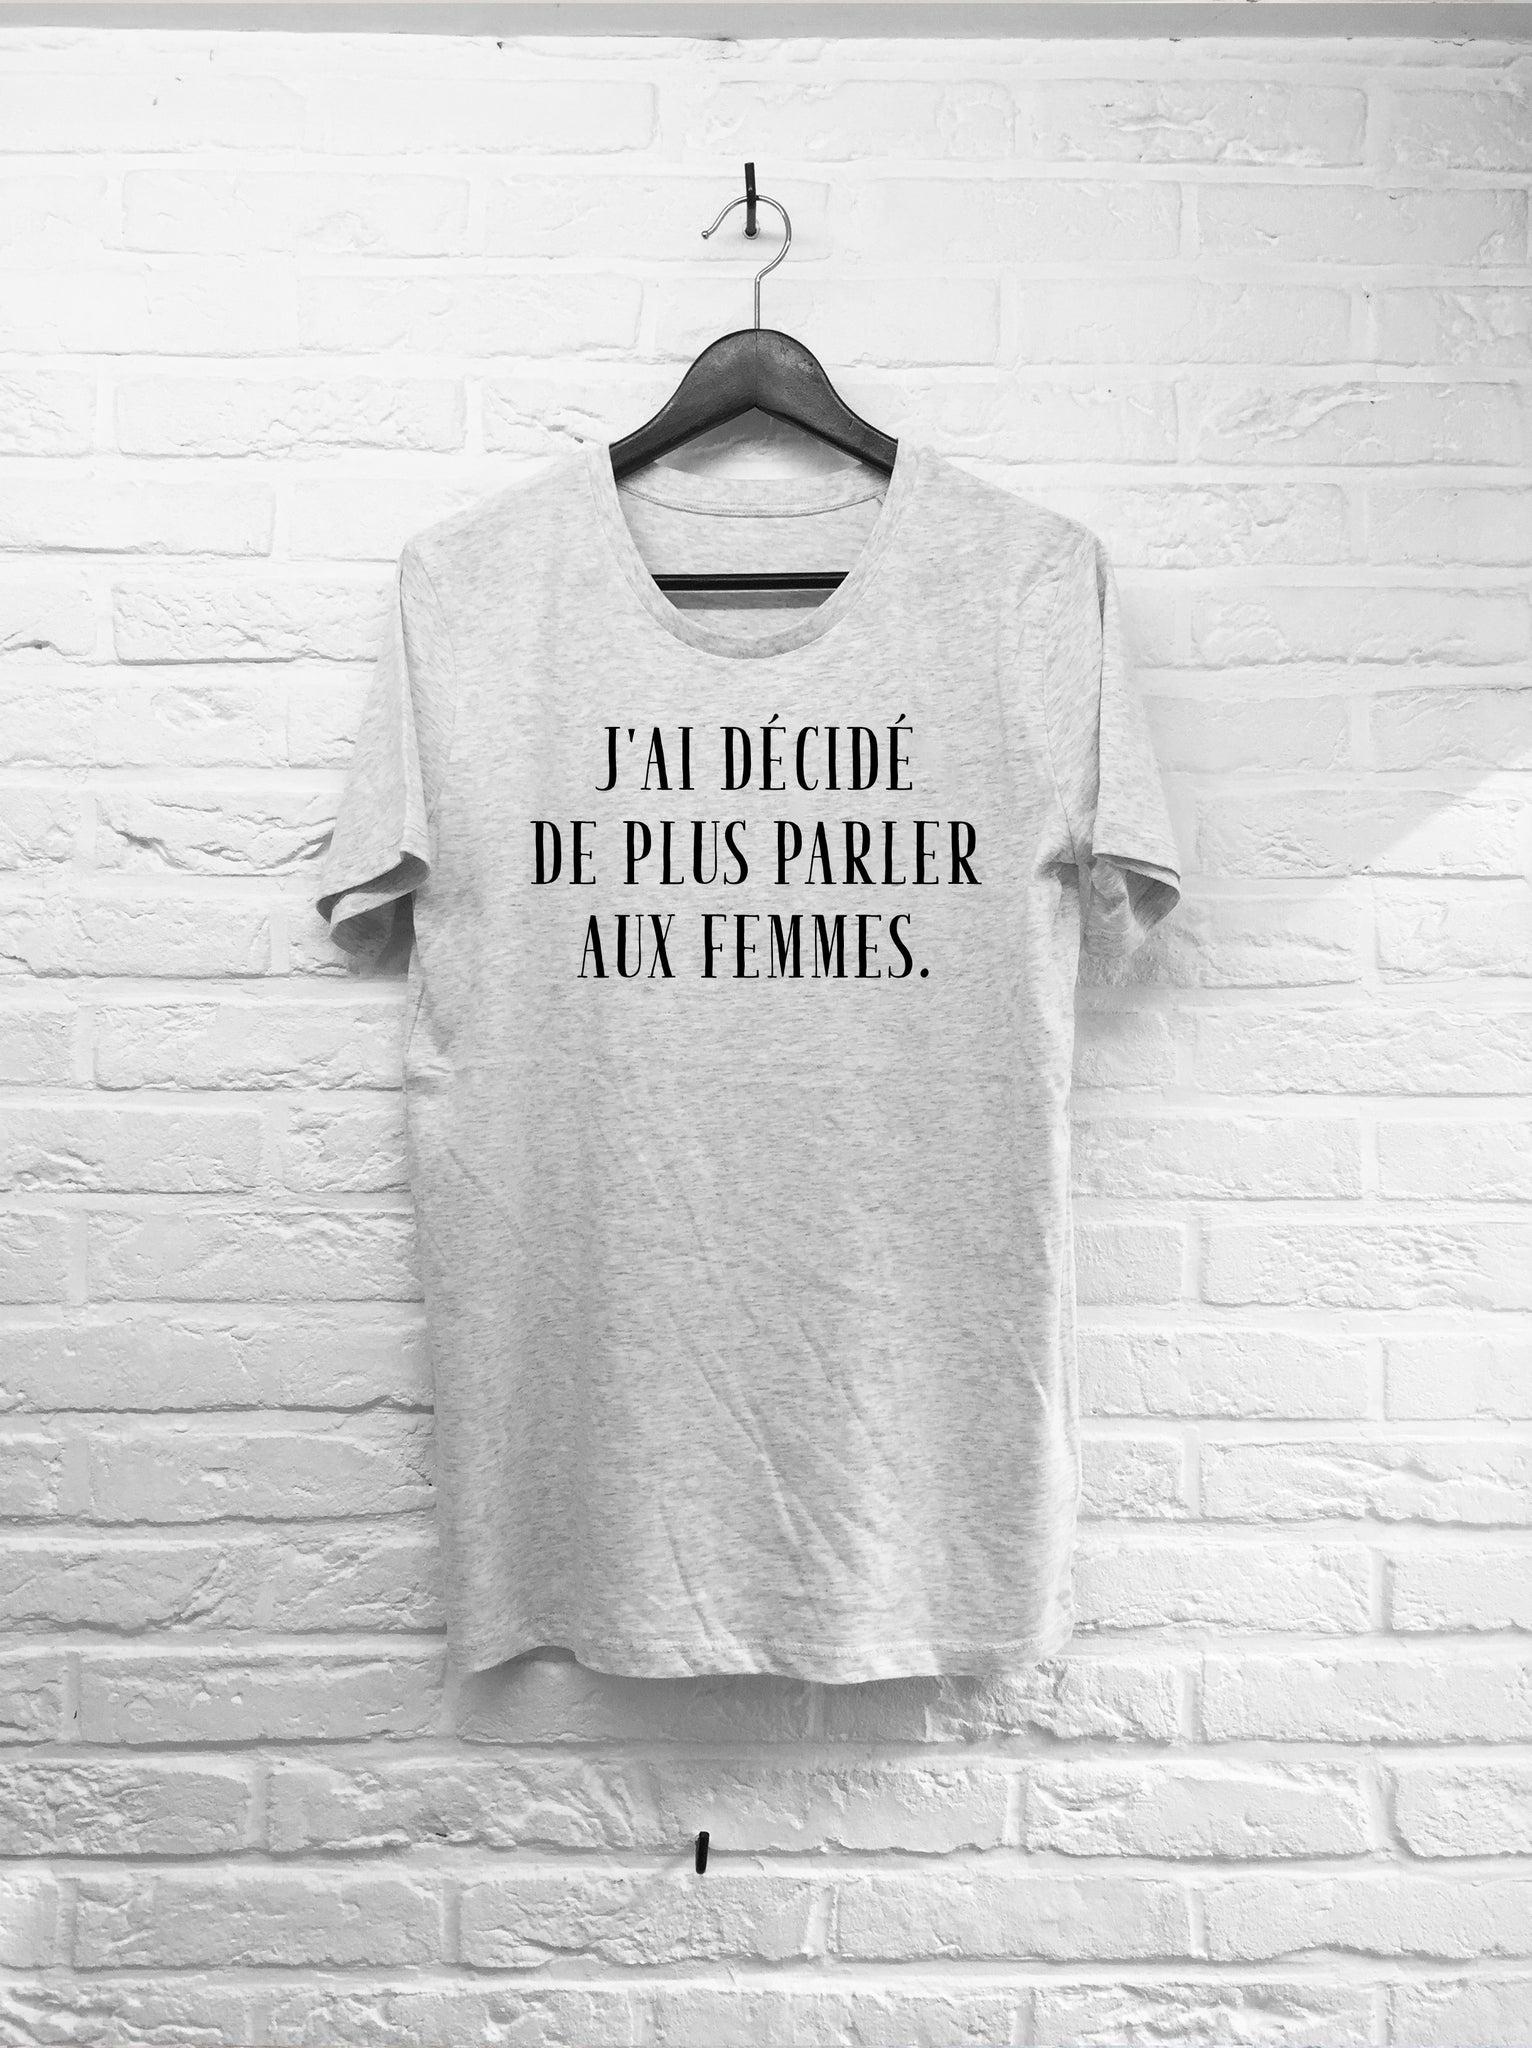 J'ai décidé de plus parler aux femmes-T shirt-Atelier Amelot